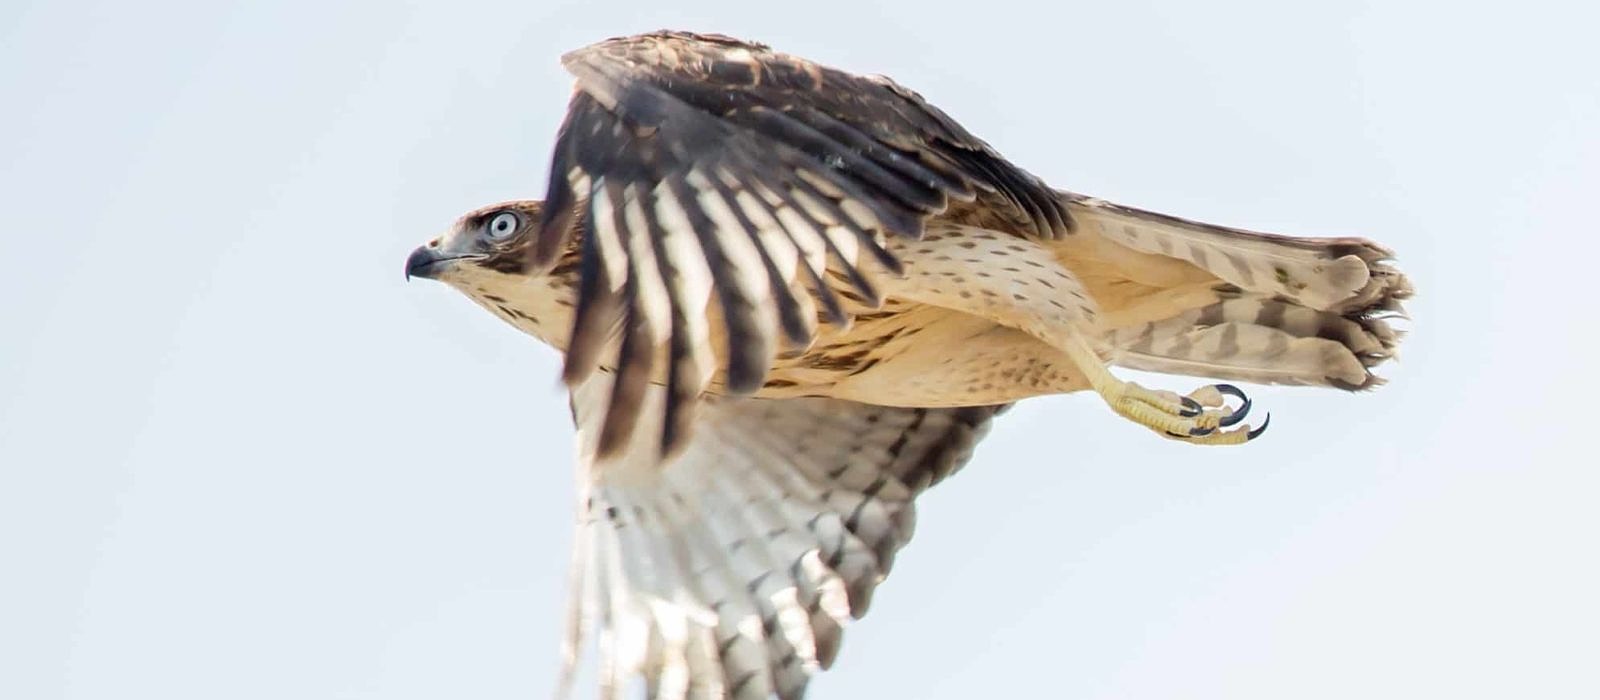 A Broad-winged Hawk in flight. (photo © Jen Esten)